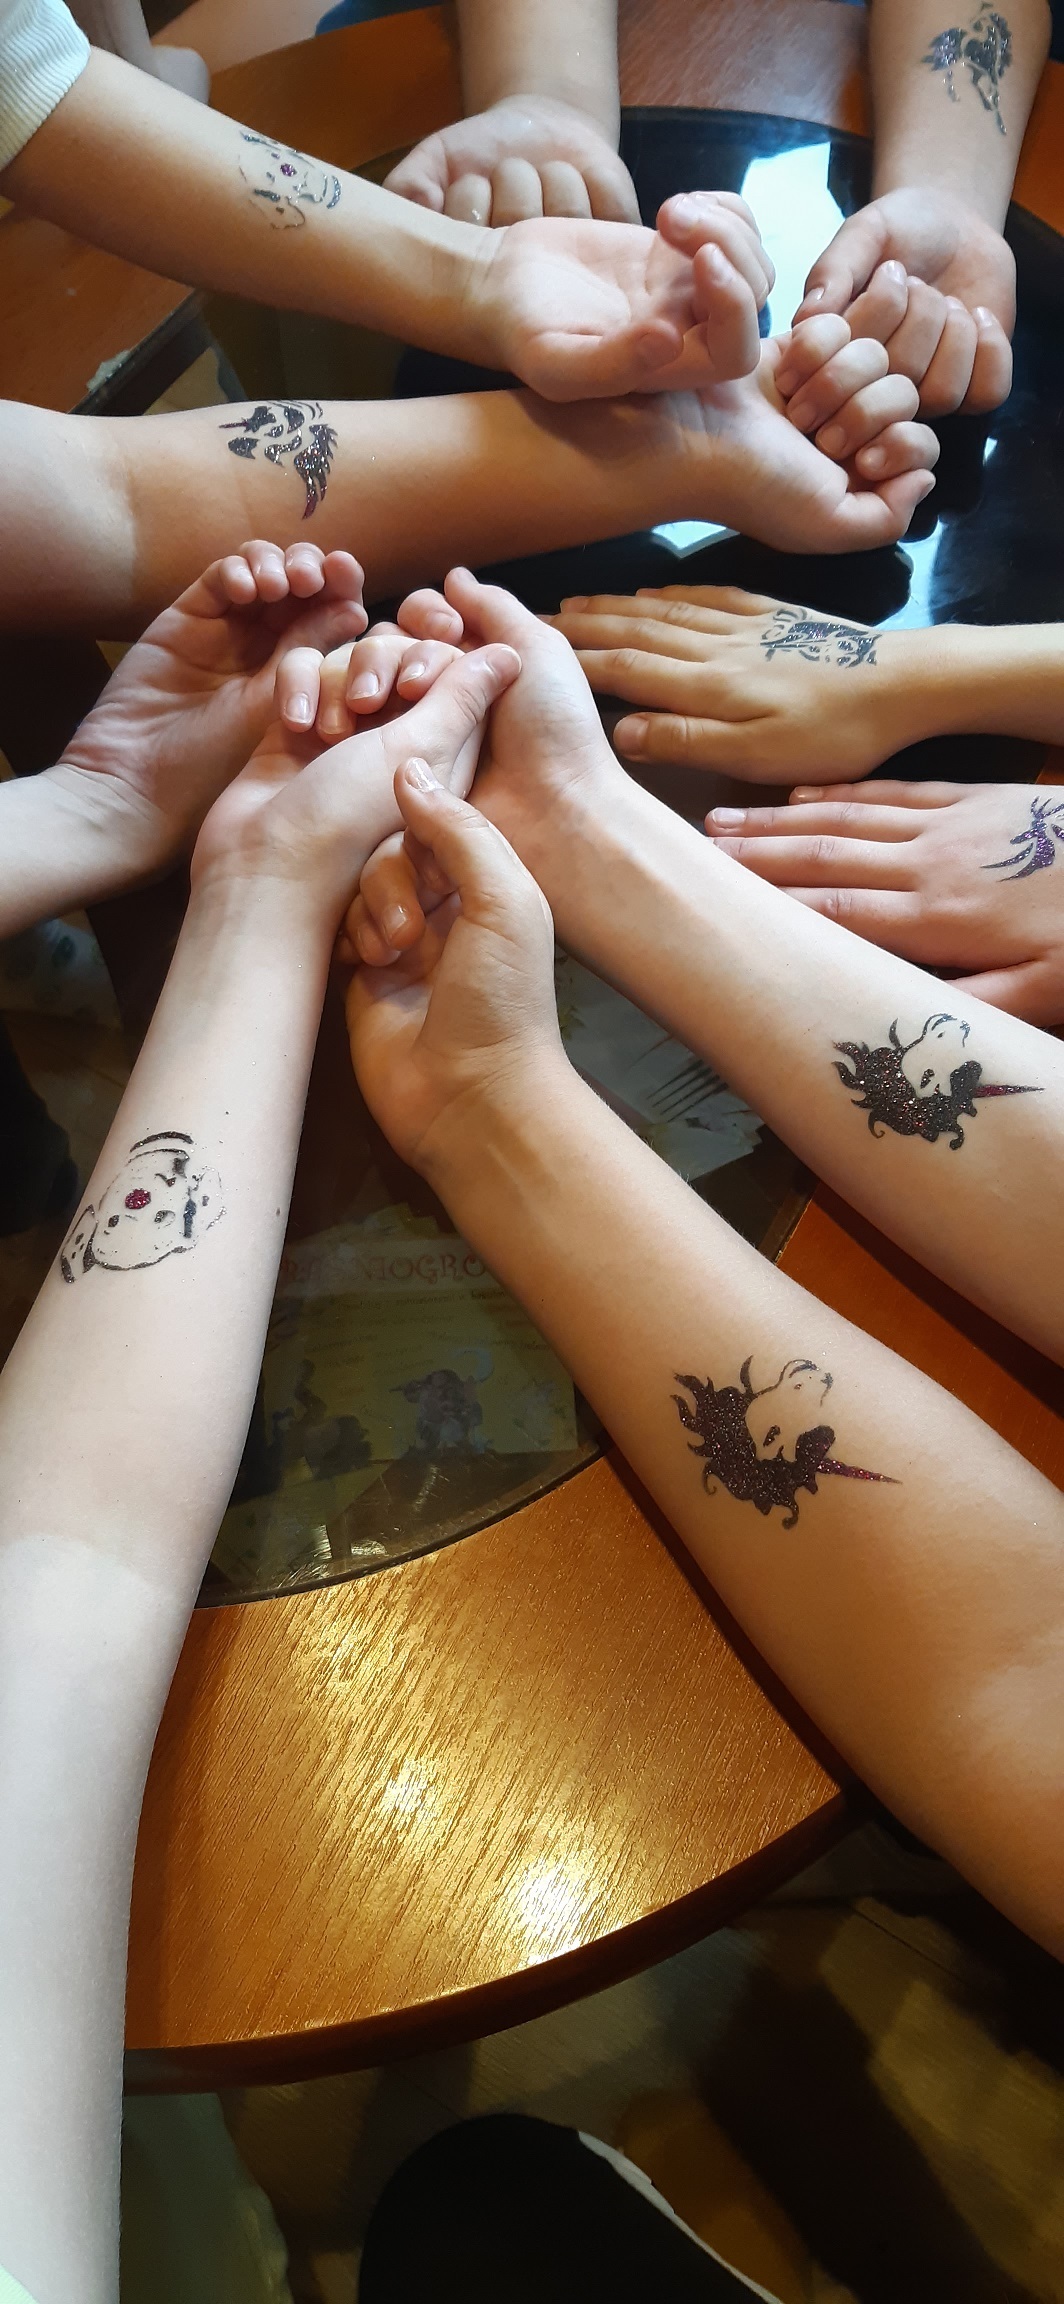 zdjęcie rąk dzieci z tatuazami.jpg